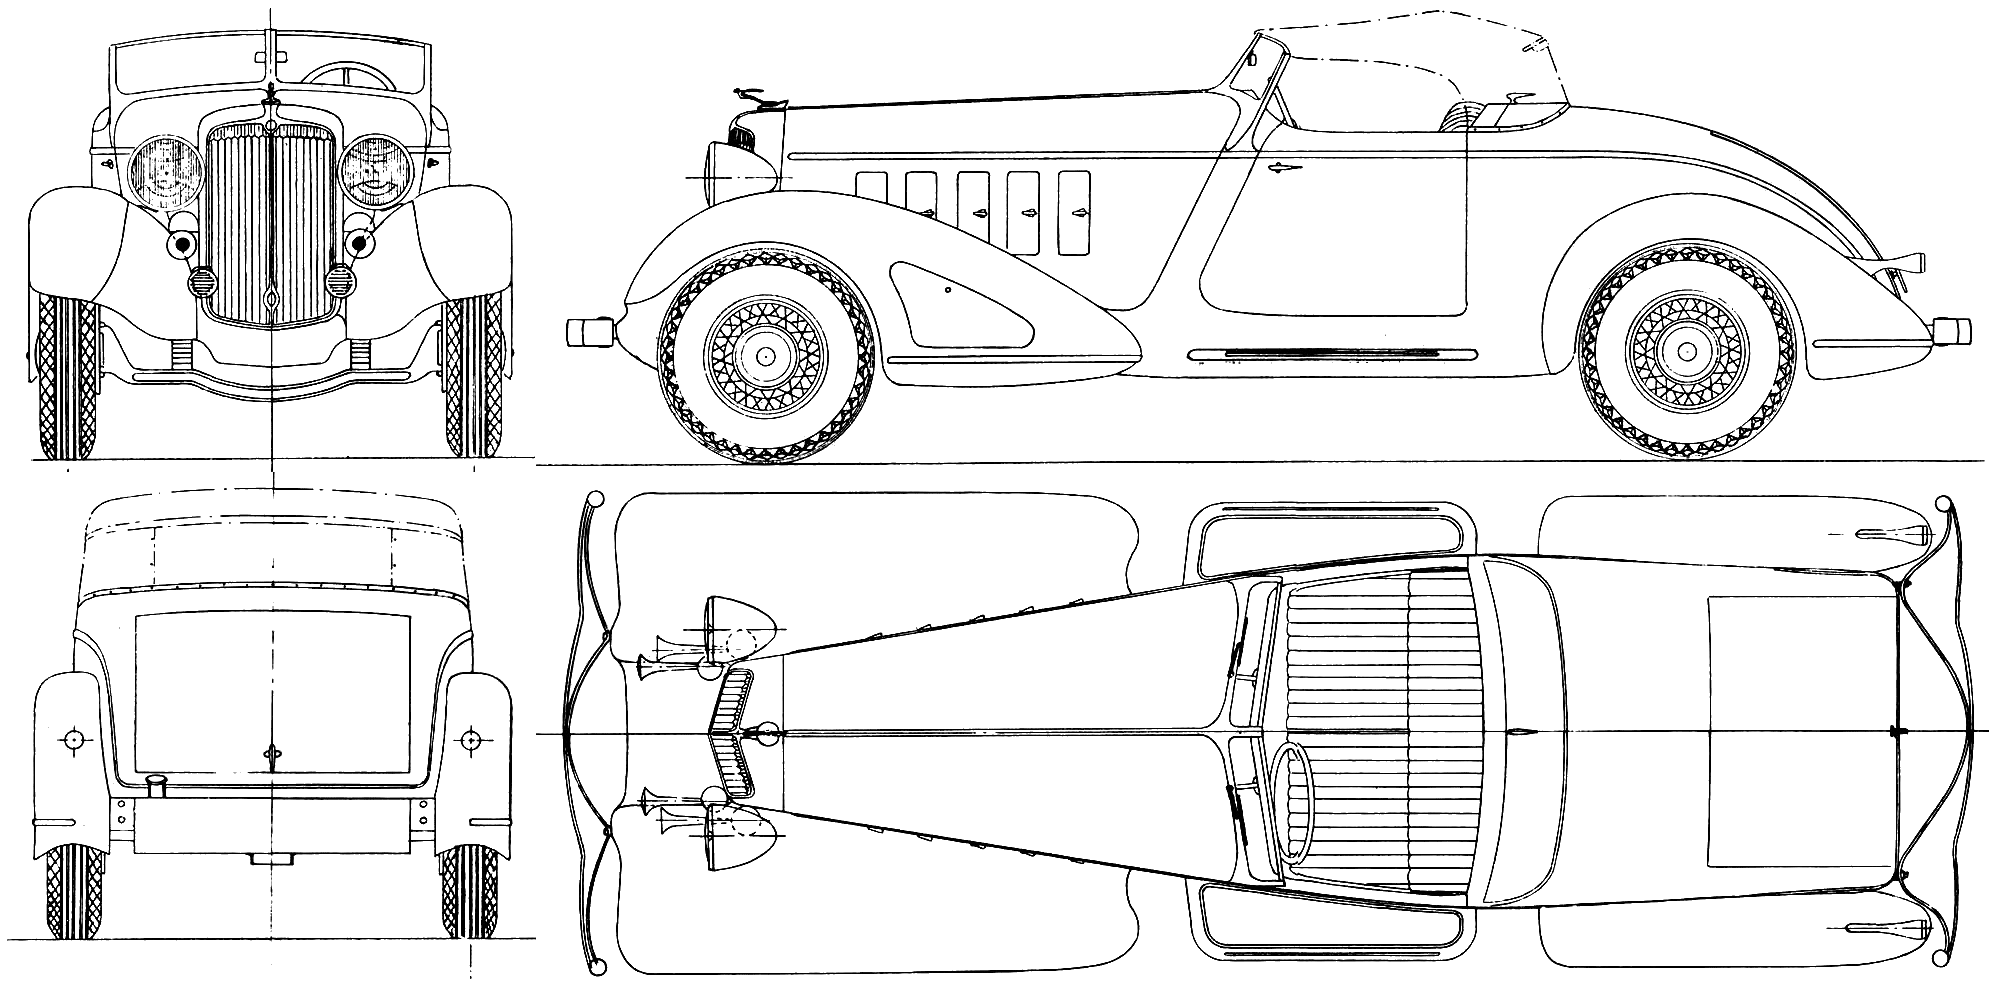 Chrysler Custom Imperial blueprint